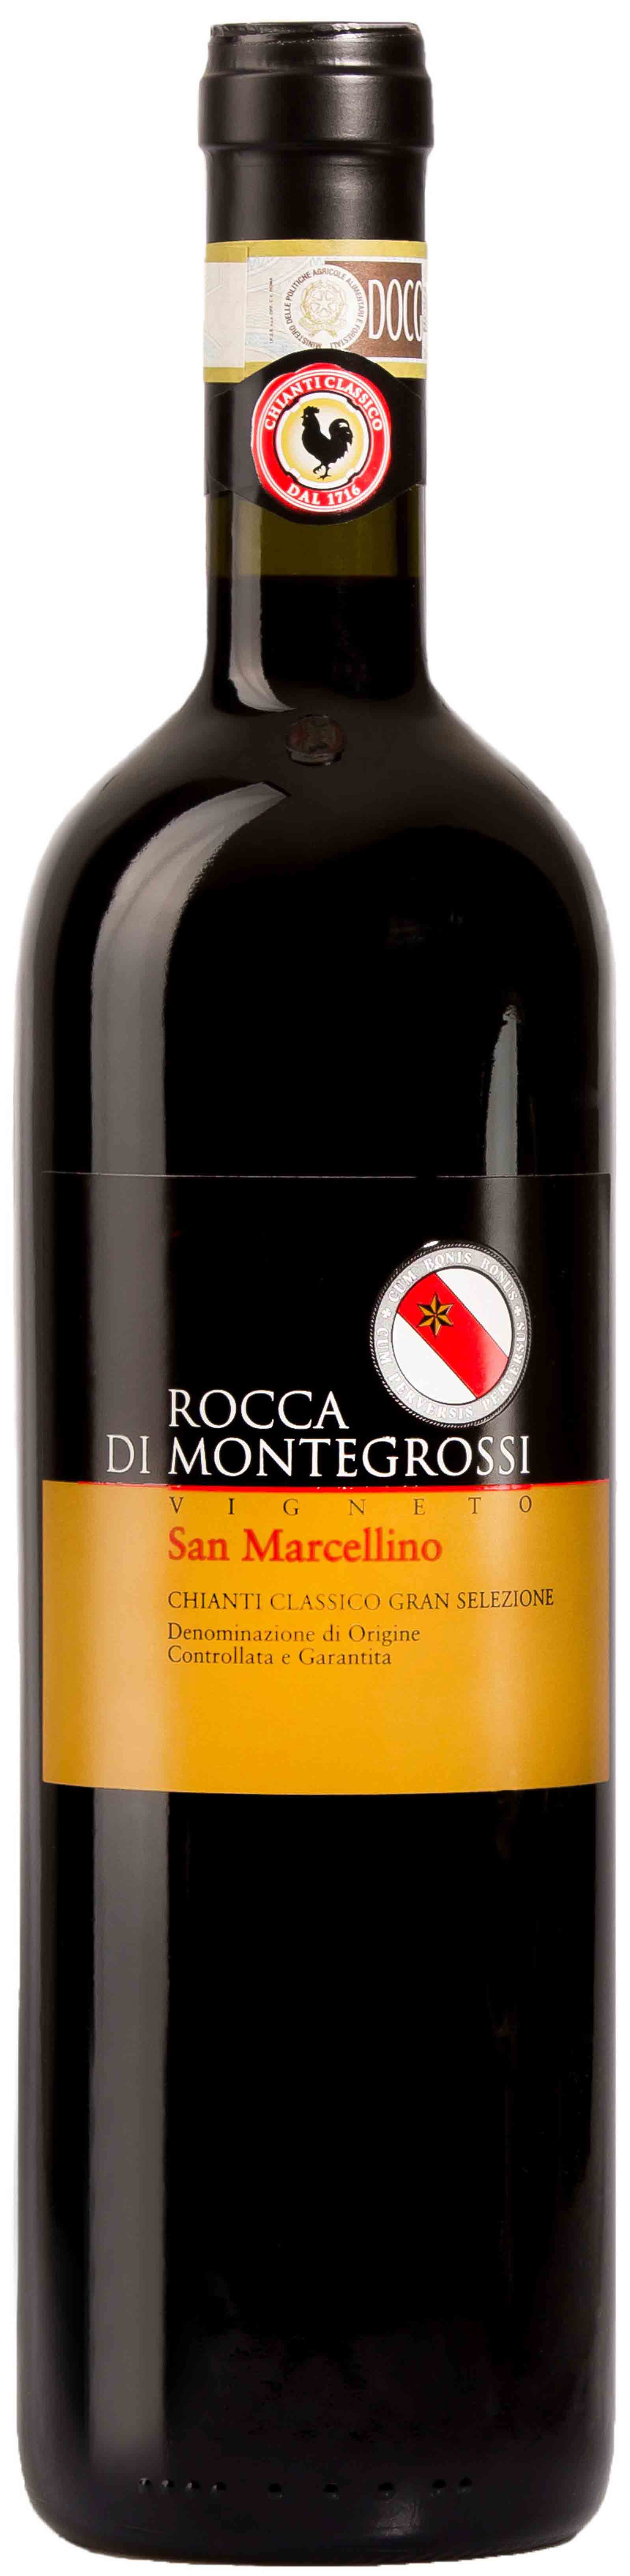 Rocca Di Montegrossi, Vigneto San Marcellino Chianti Classico Gran Selezione, 2015